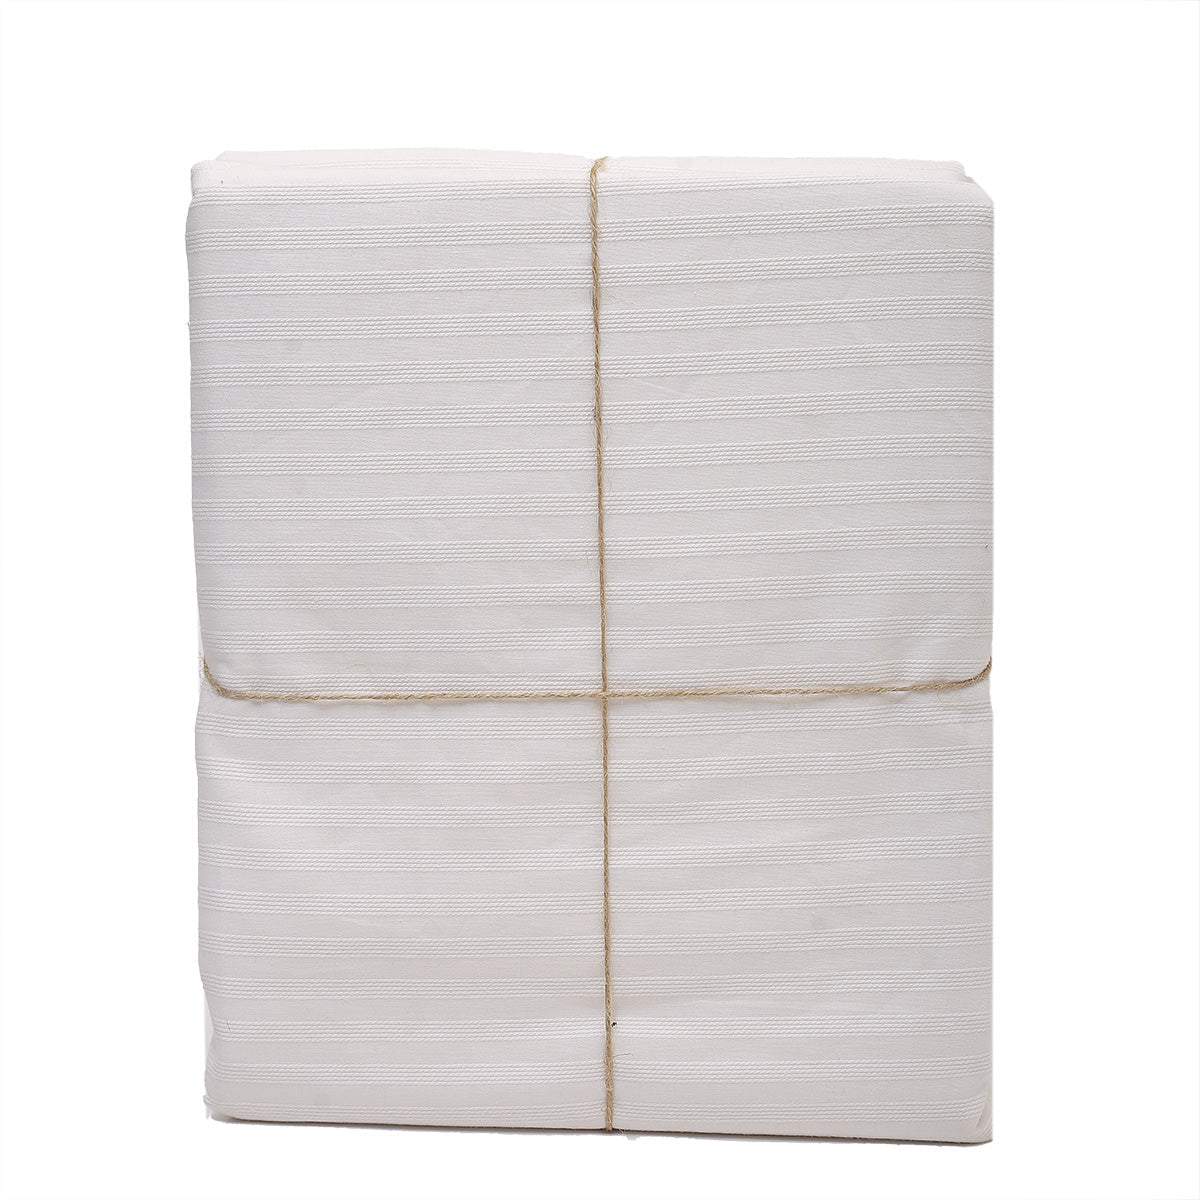 Stripe Bed Cover 92x104 White